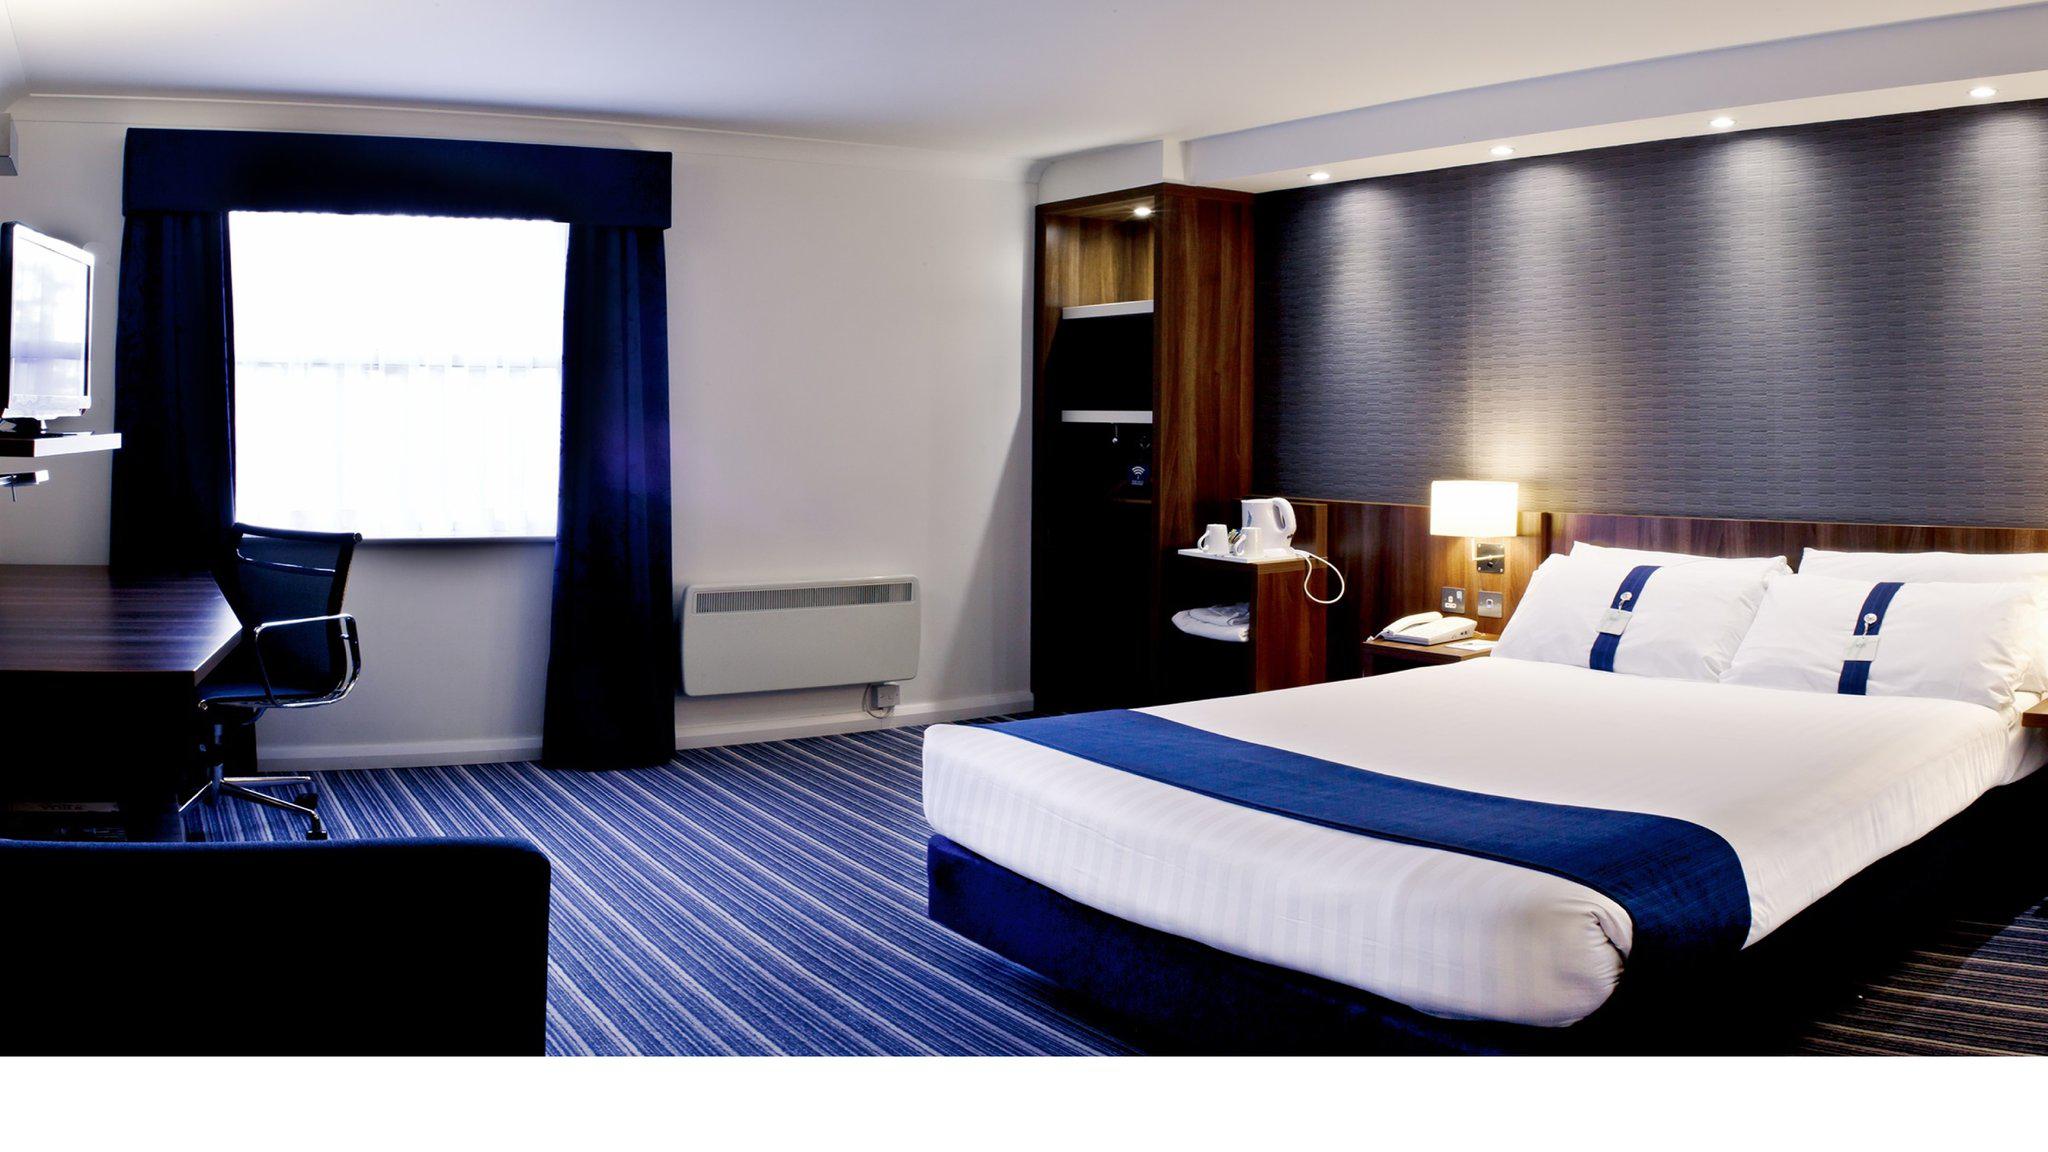 Holiday Inn Express Leeds - East, an IHG Hotel Leeds 01132 880574